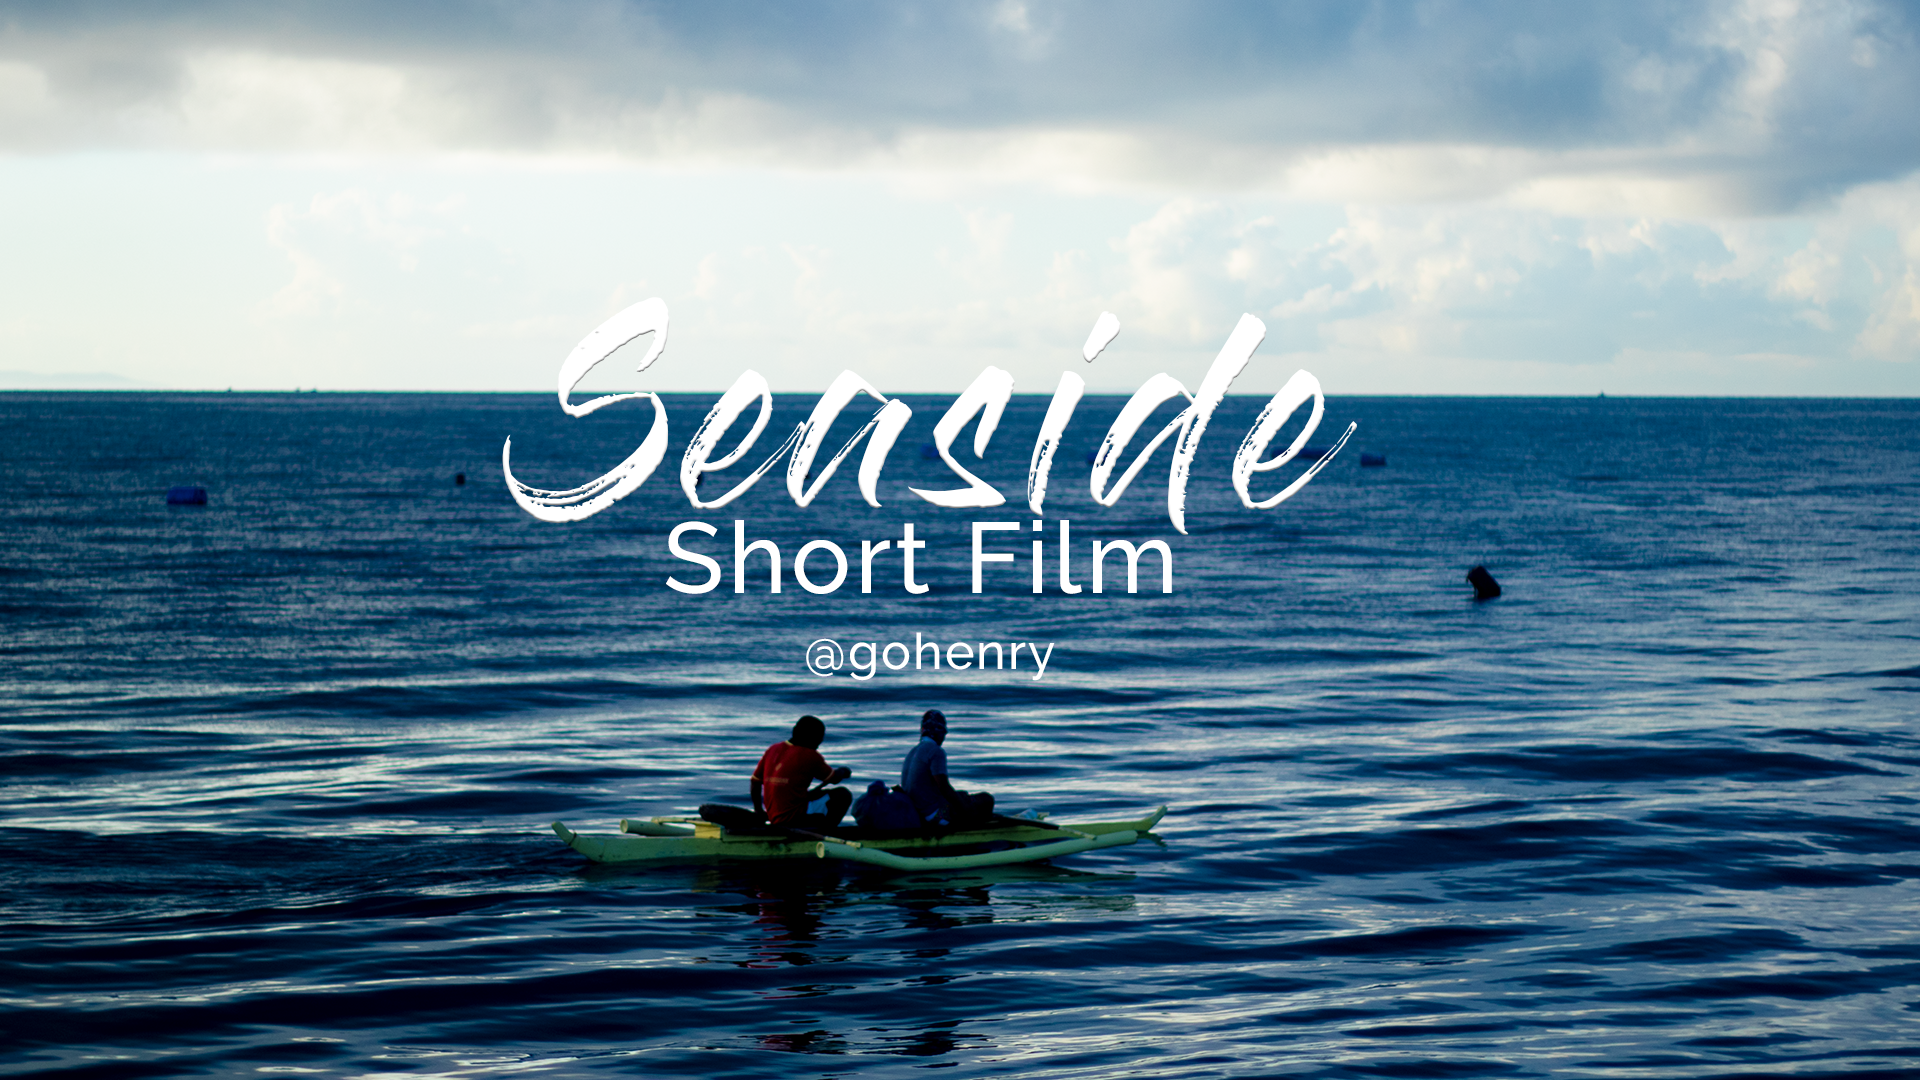 Sea Side Short Film.png